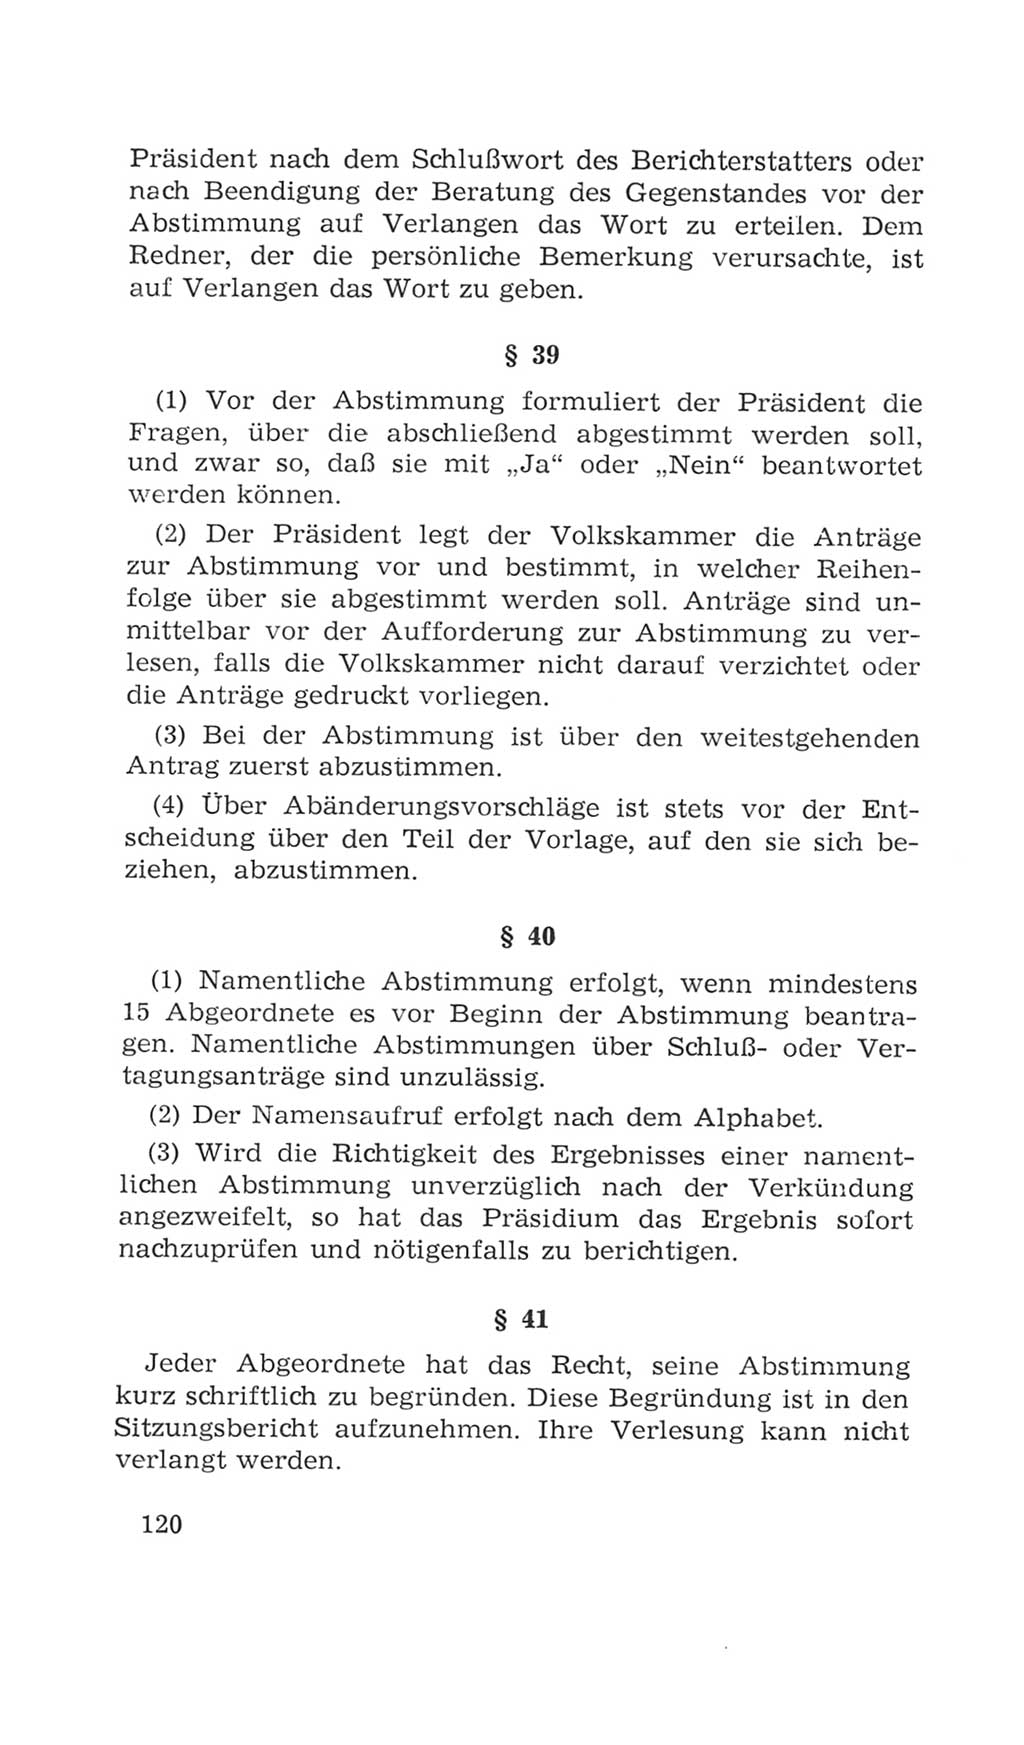 Volkskammer (VK) der Deutschen Demokratischen Republik (DDR), 4. Wahlperiode 1963-1967, Seite 120 (VK. DDR 4. WP. 1963-1967, S. 120)